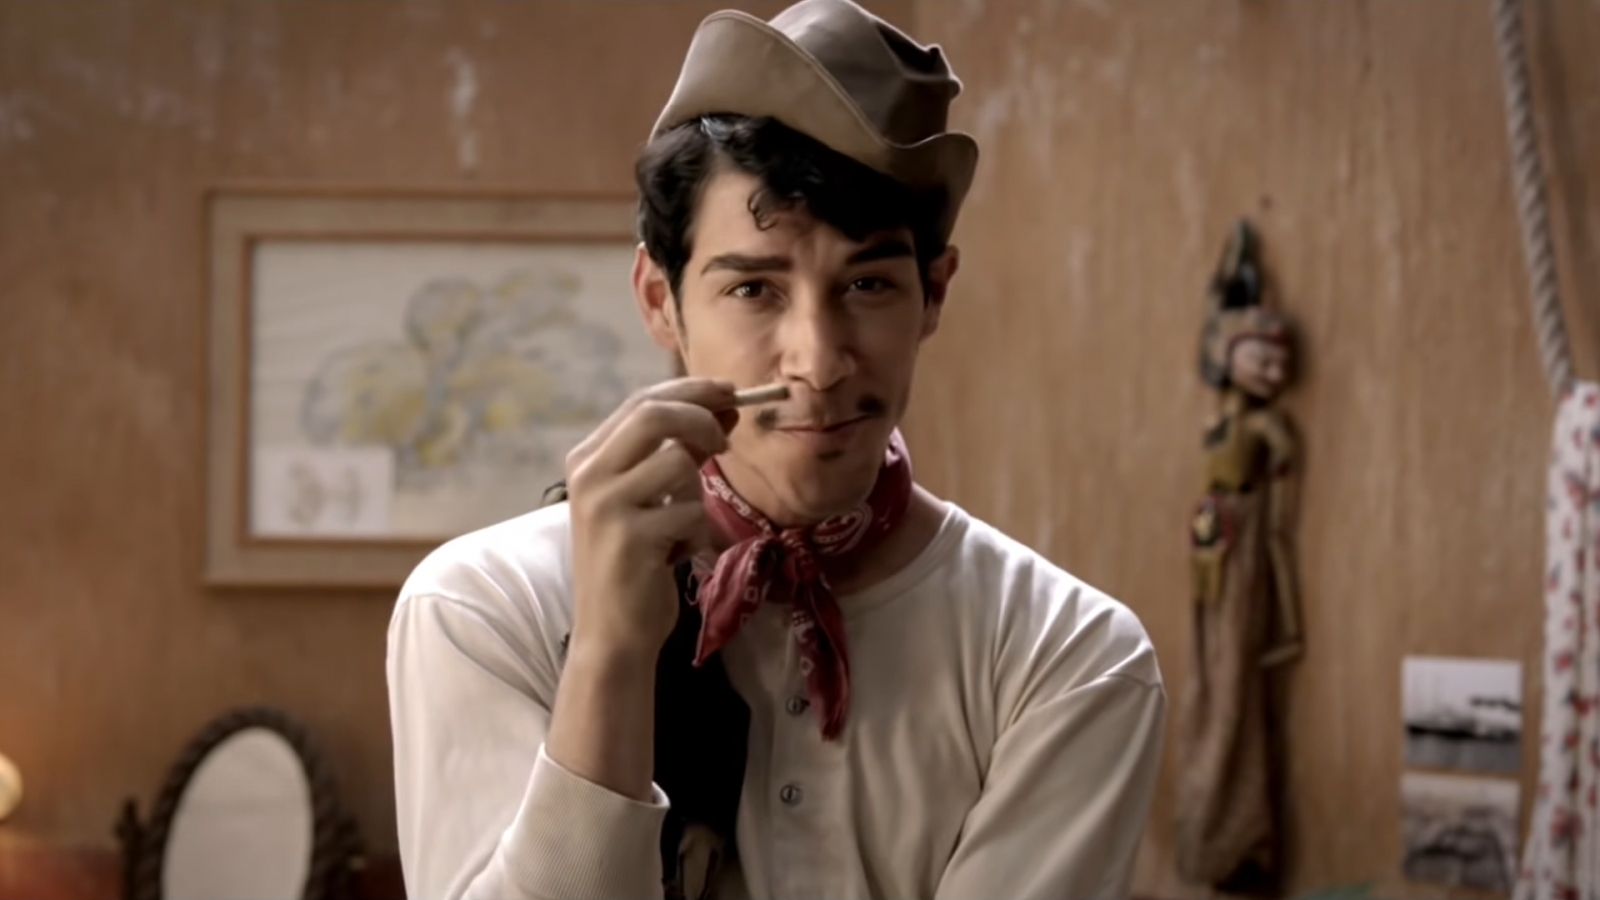 Somos cine - Cantinflas: Cine español online, en Somos Cine | RTVE.es